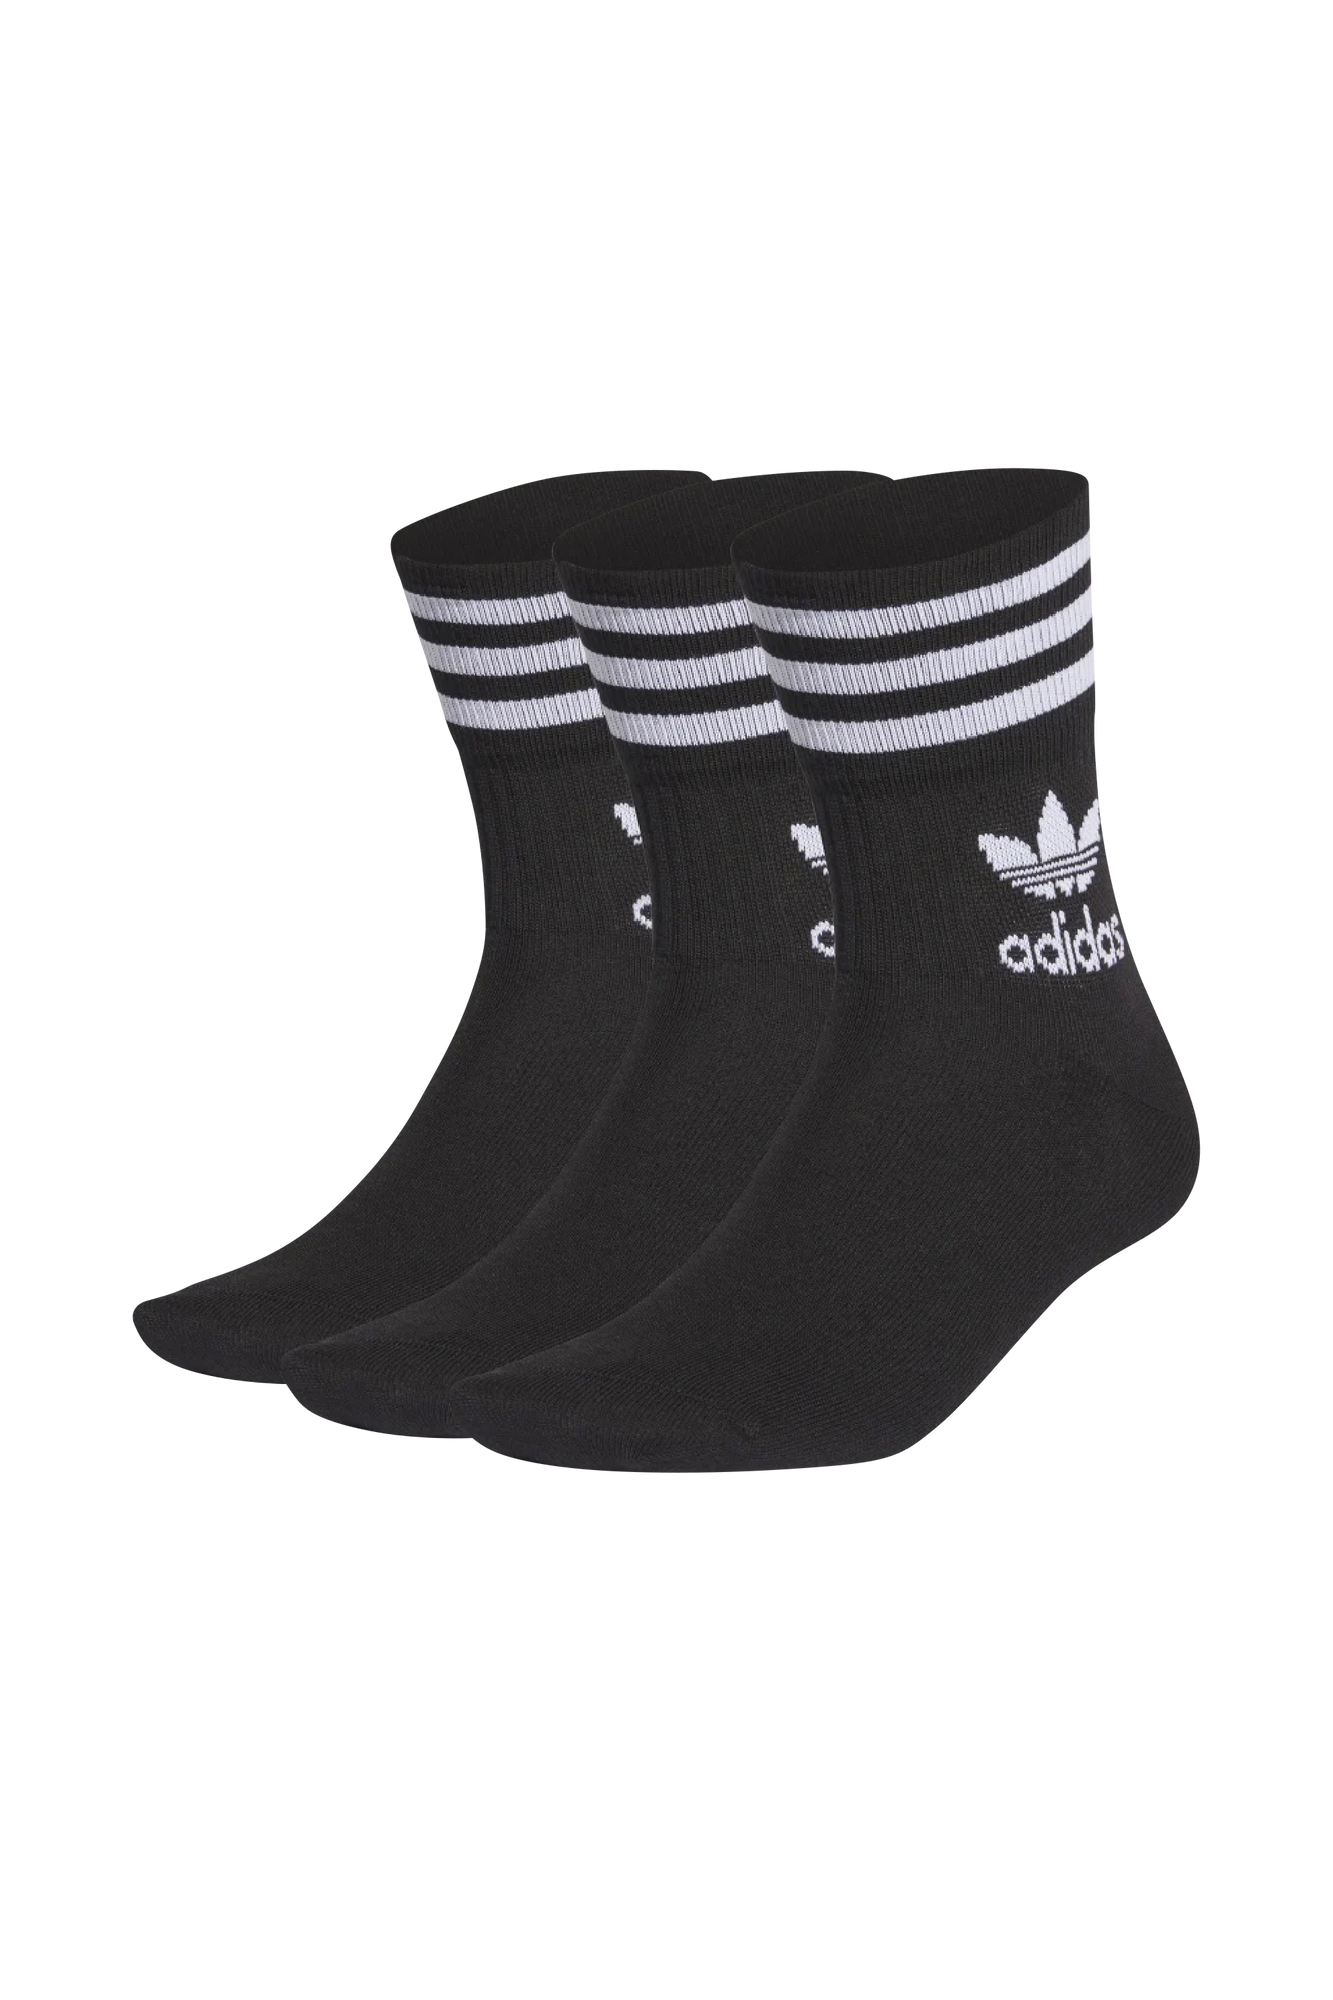 Adidas - Lot de 3 paires de chaussettes